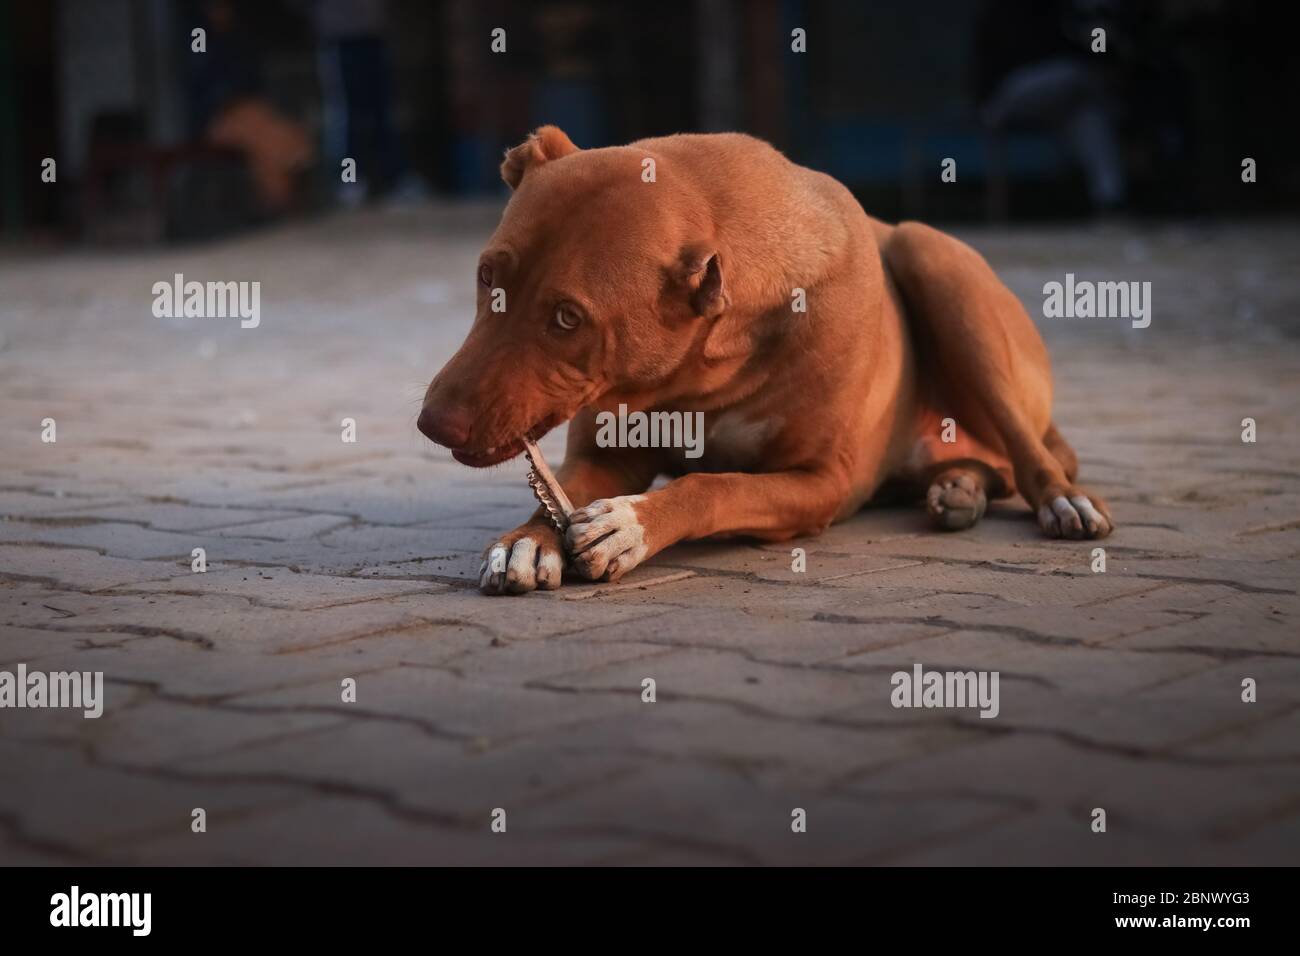 Ein hungriger Hund leckt einen Knochen, während er auf dem Boden des Hofes  sitzt und deutlich auf die Kamera schaut, tief geneigt Stockfotografie -  Alamy